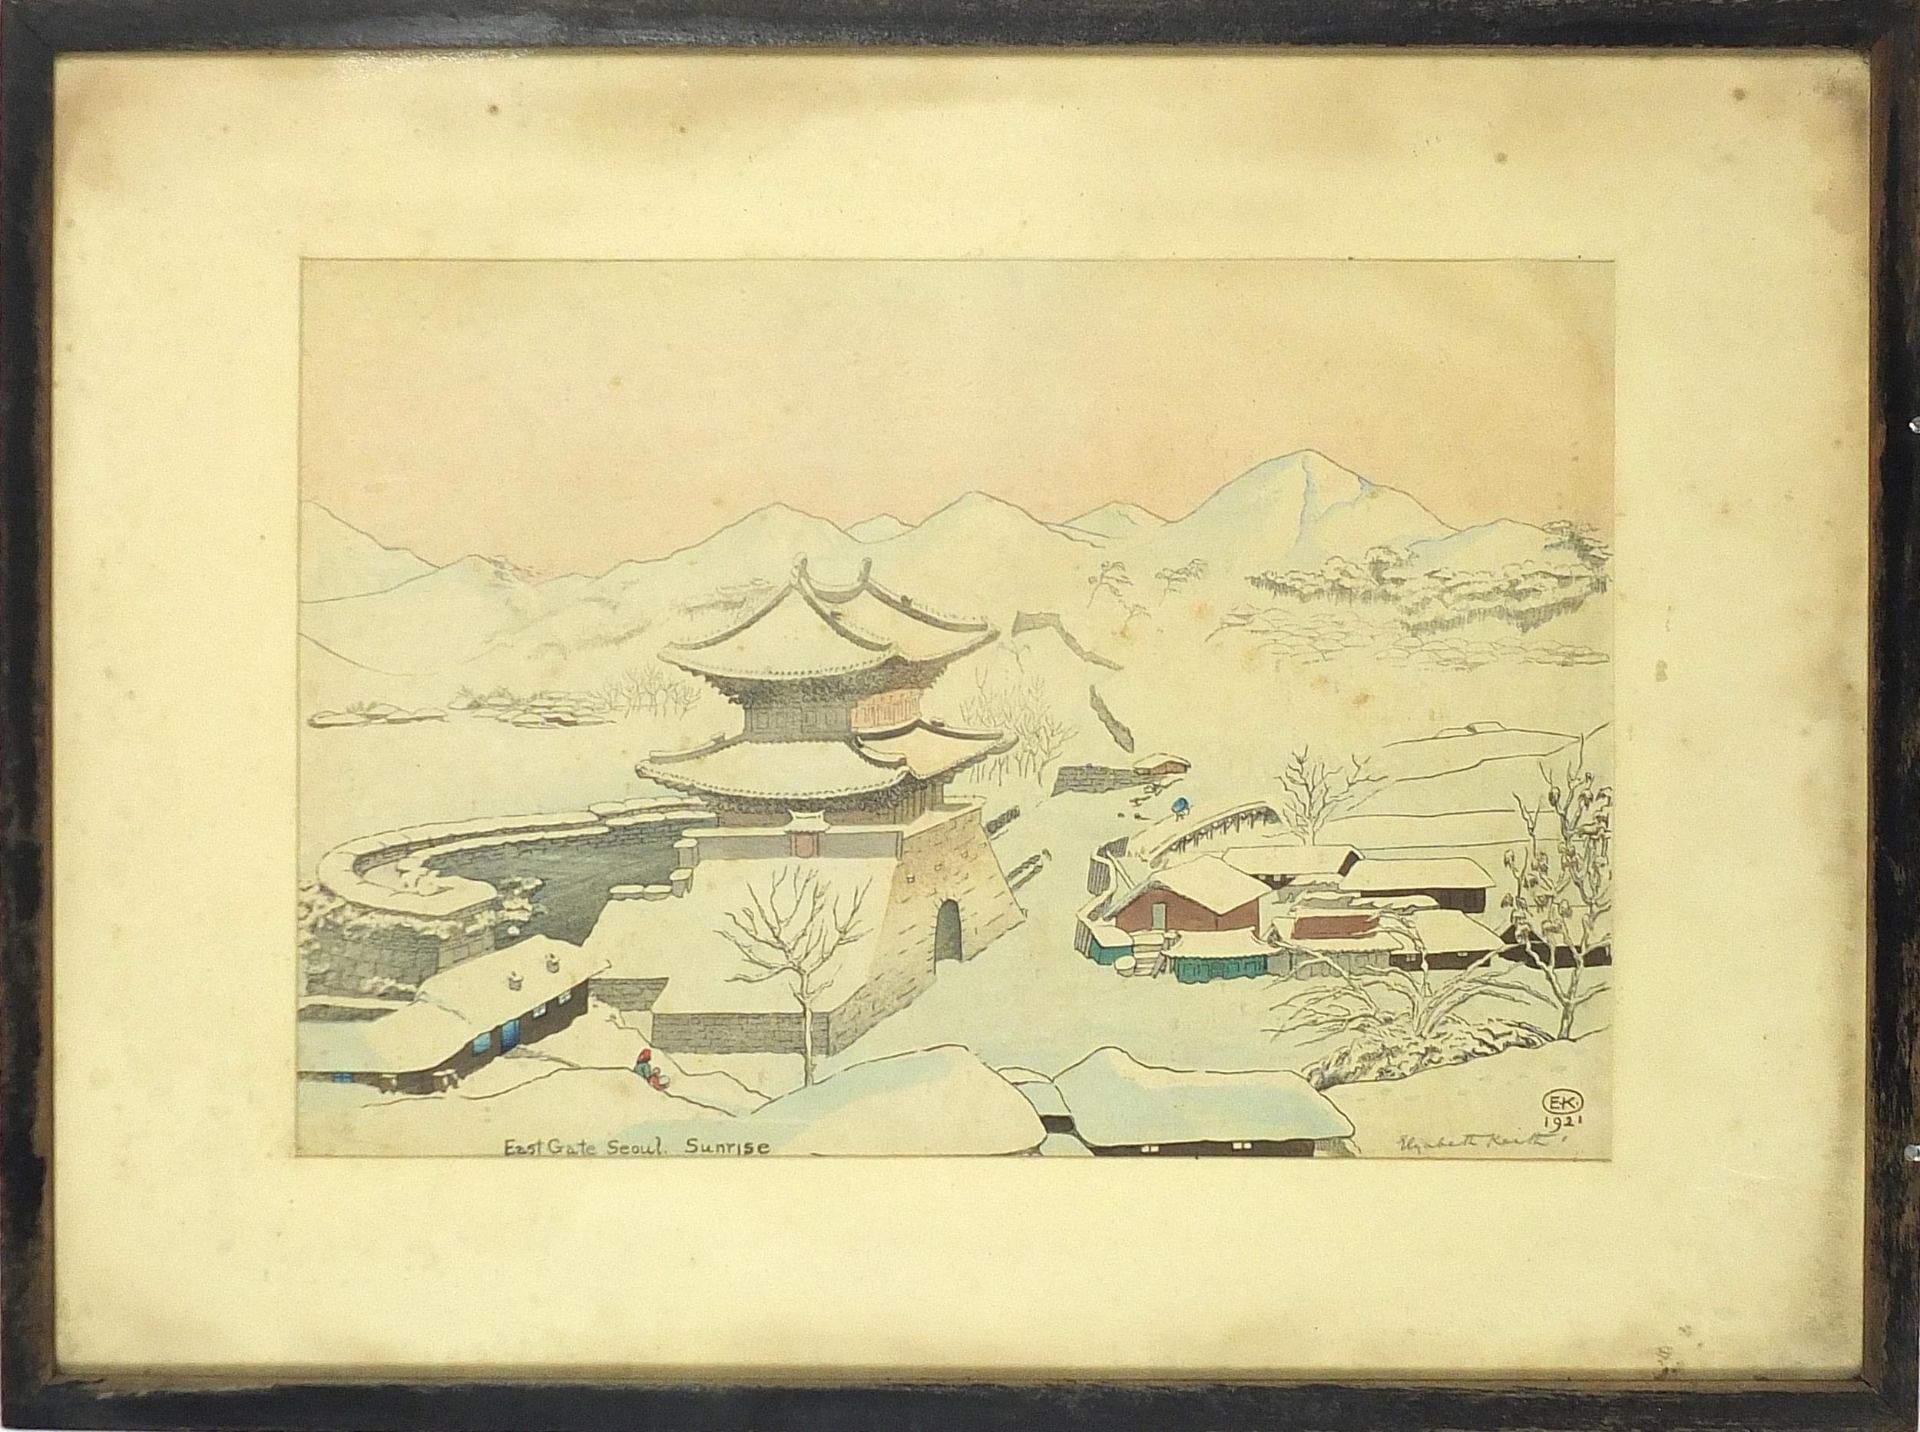 Elizabeth Keith - East Gate, Seoul sunrise, 1920s Scottish school Japanese style woodblock print - Image 2 of 5